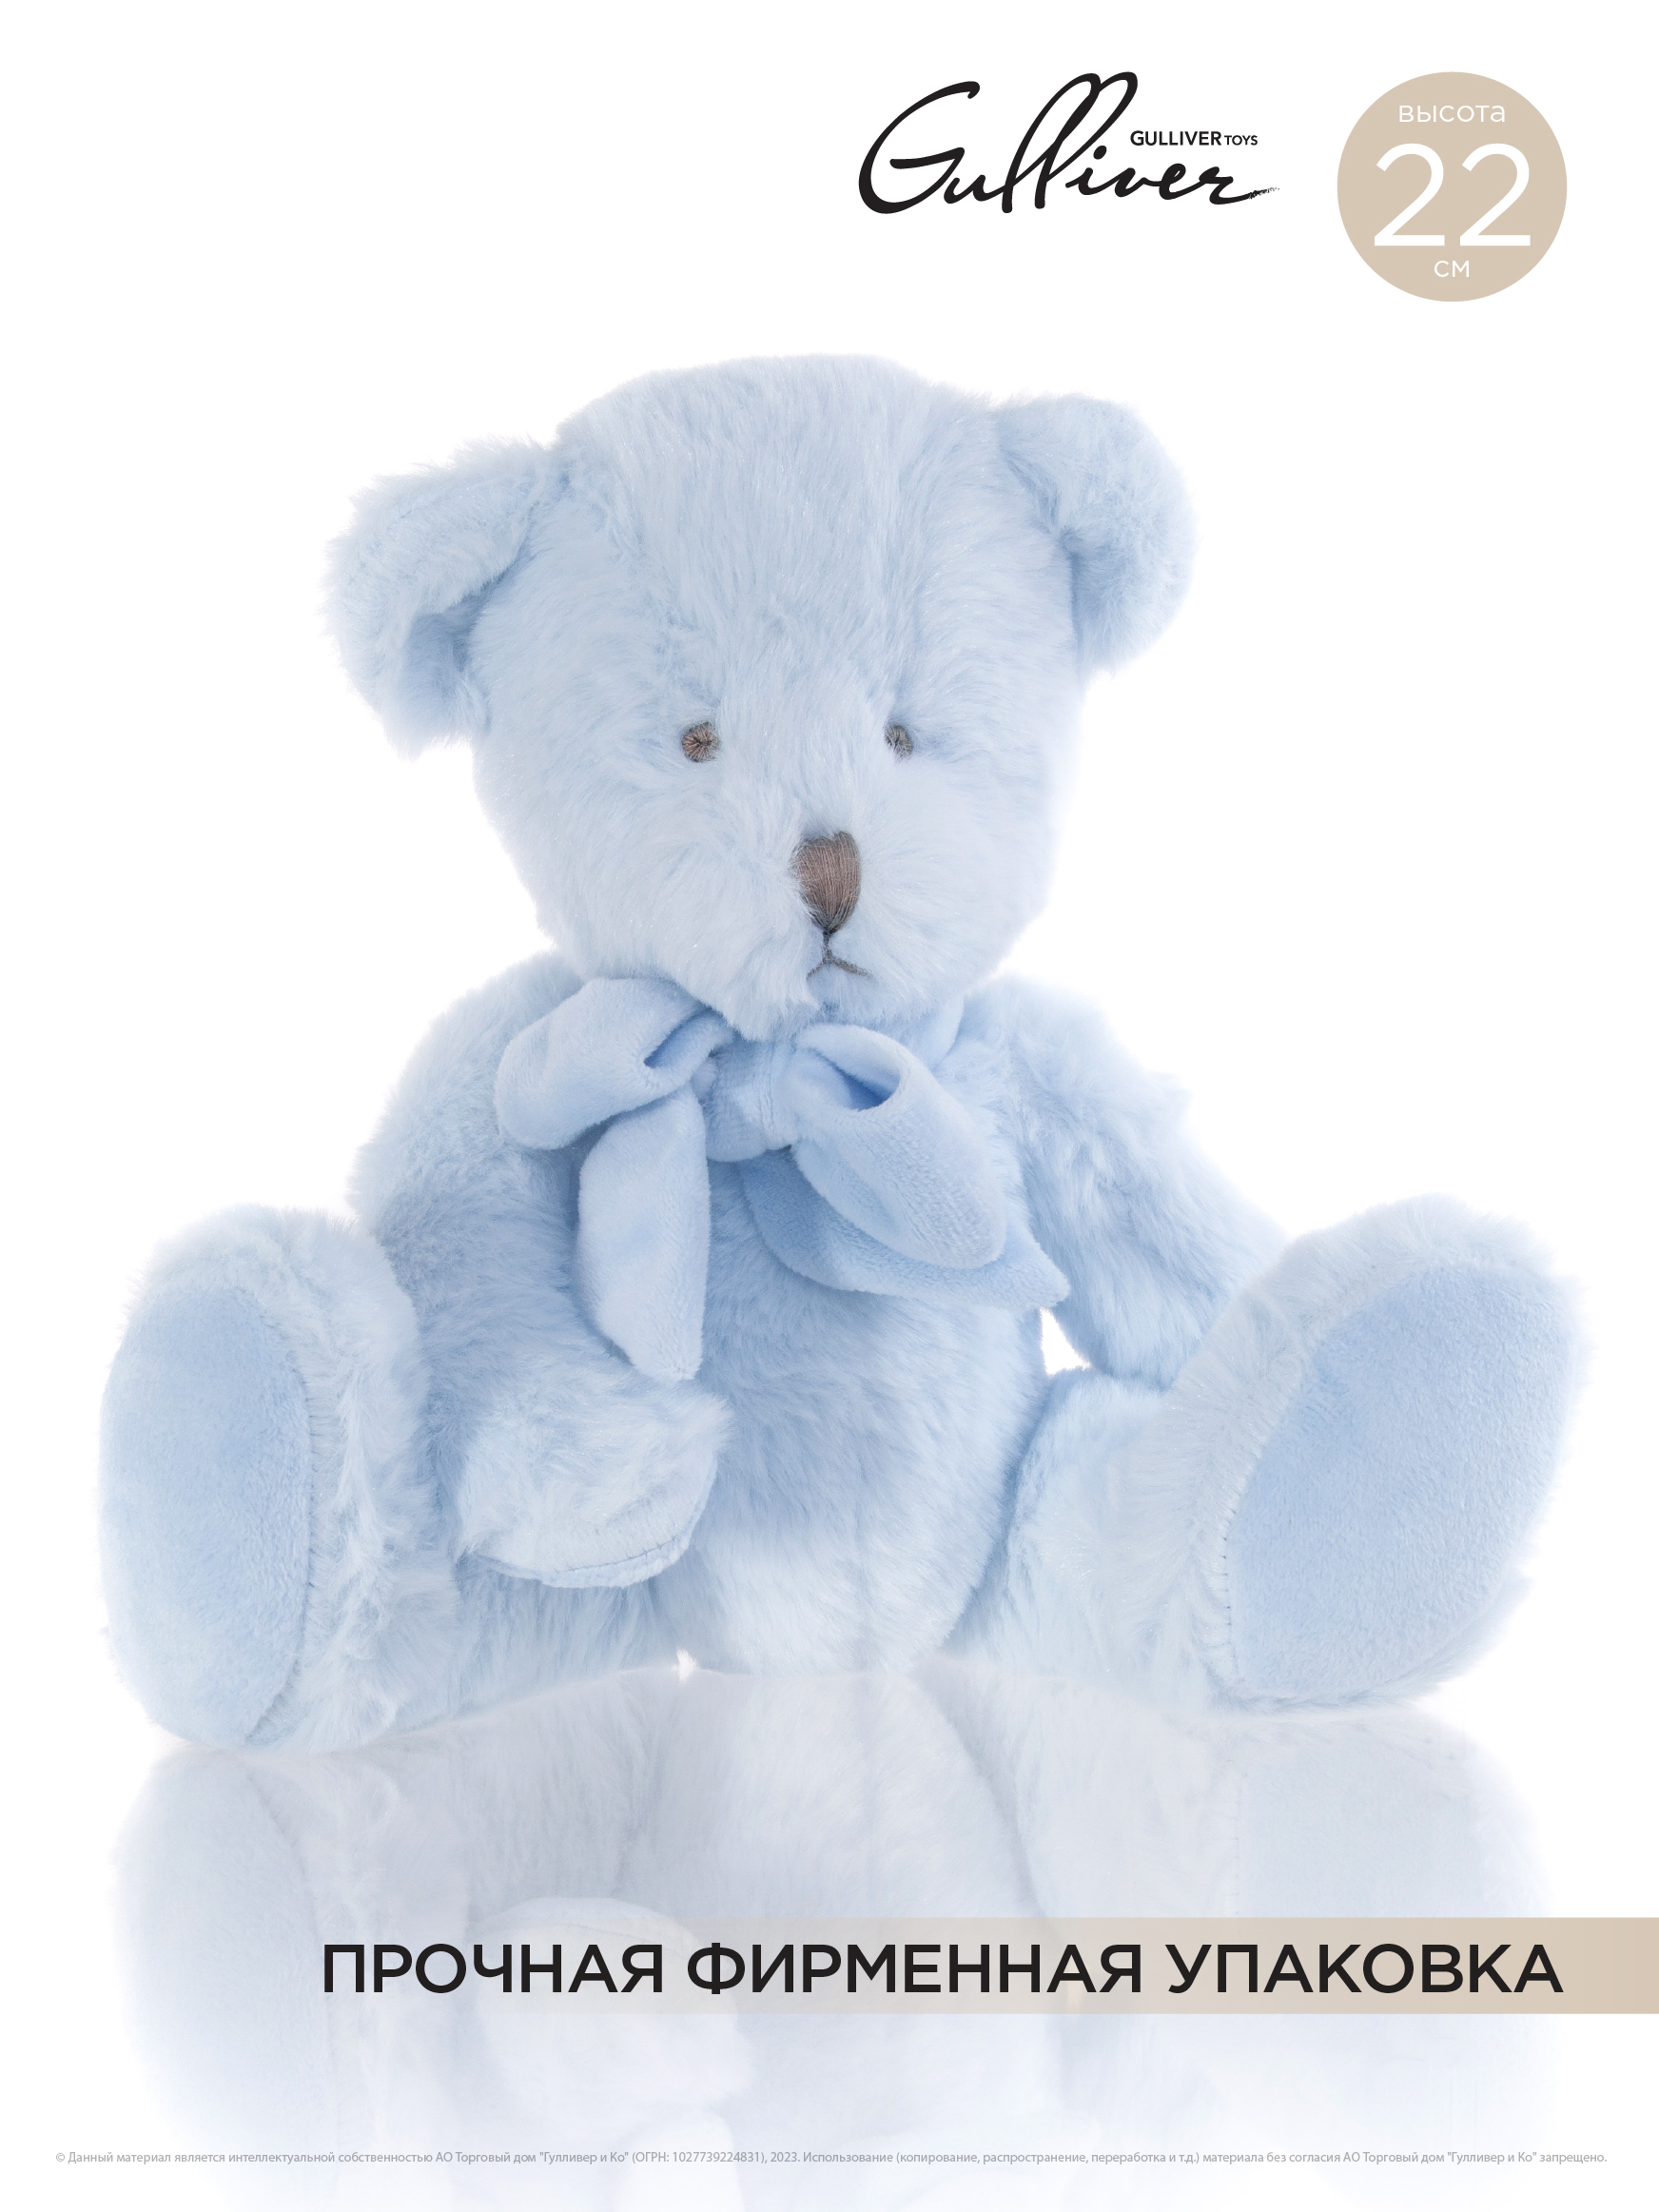 Мягкая игрушка GULLIVER Мишка голубой сидячий с бантом 22 см - фото 1